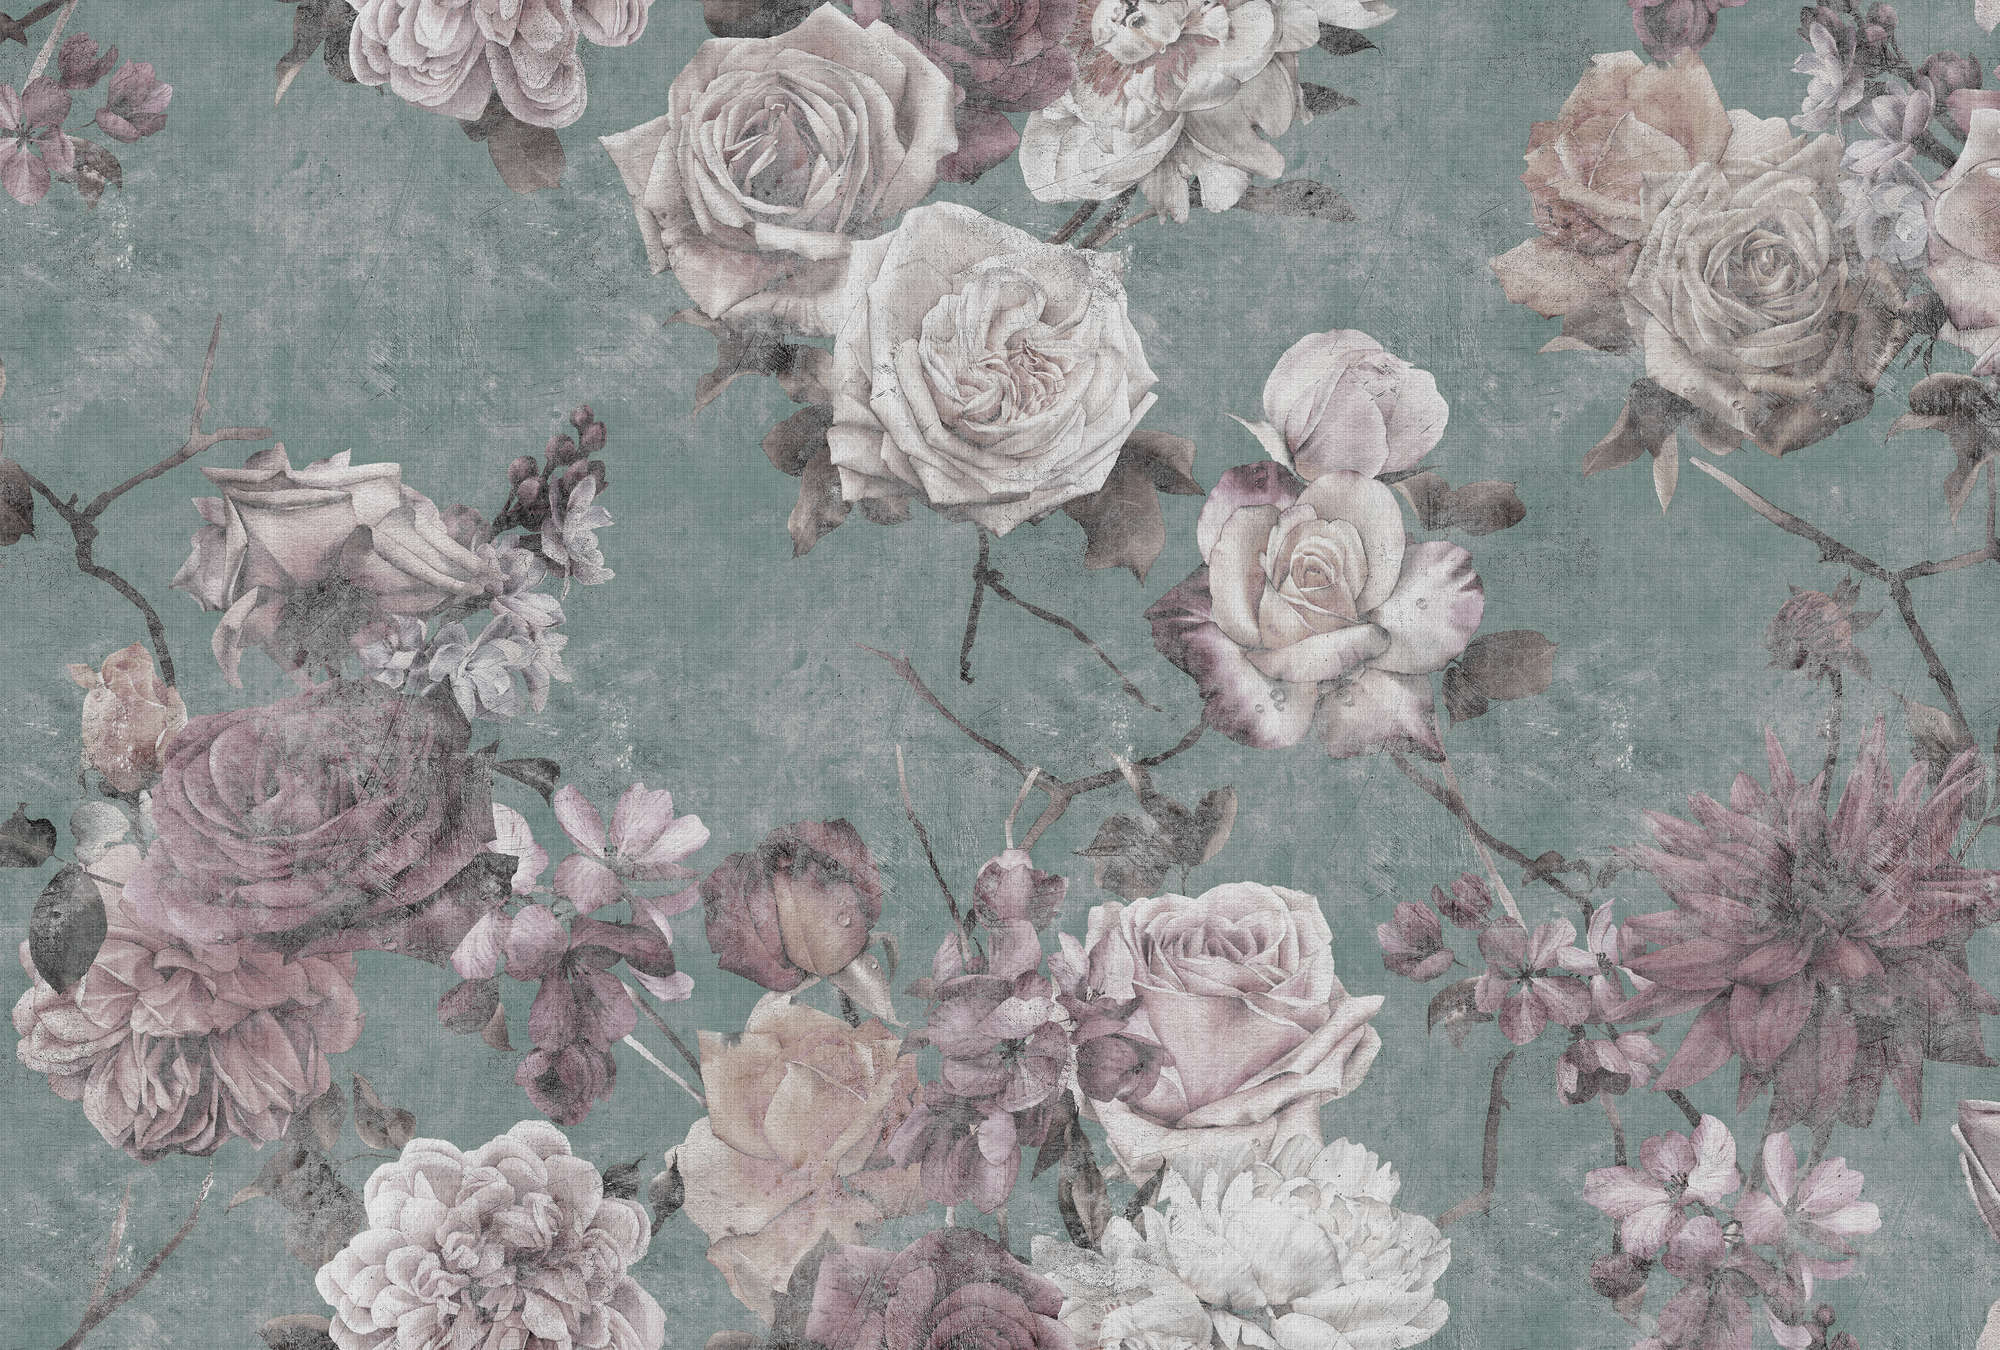             Sleeping Beauty 2 - Carta da parati con fiori di rosa in stile vintage - Texture lino naturale - Rosa, turchese | Materiali non tessuto testurizzato
        